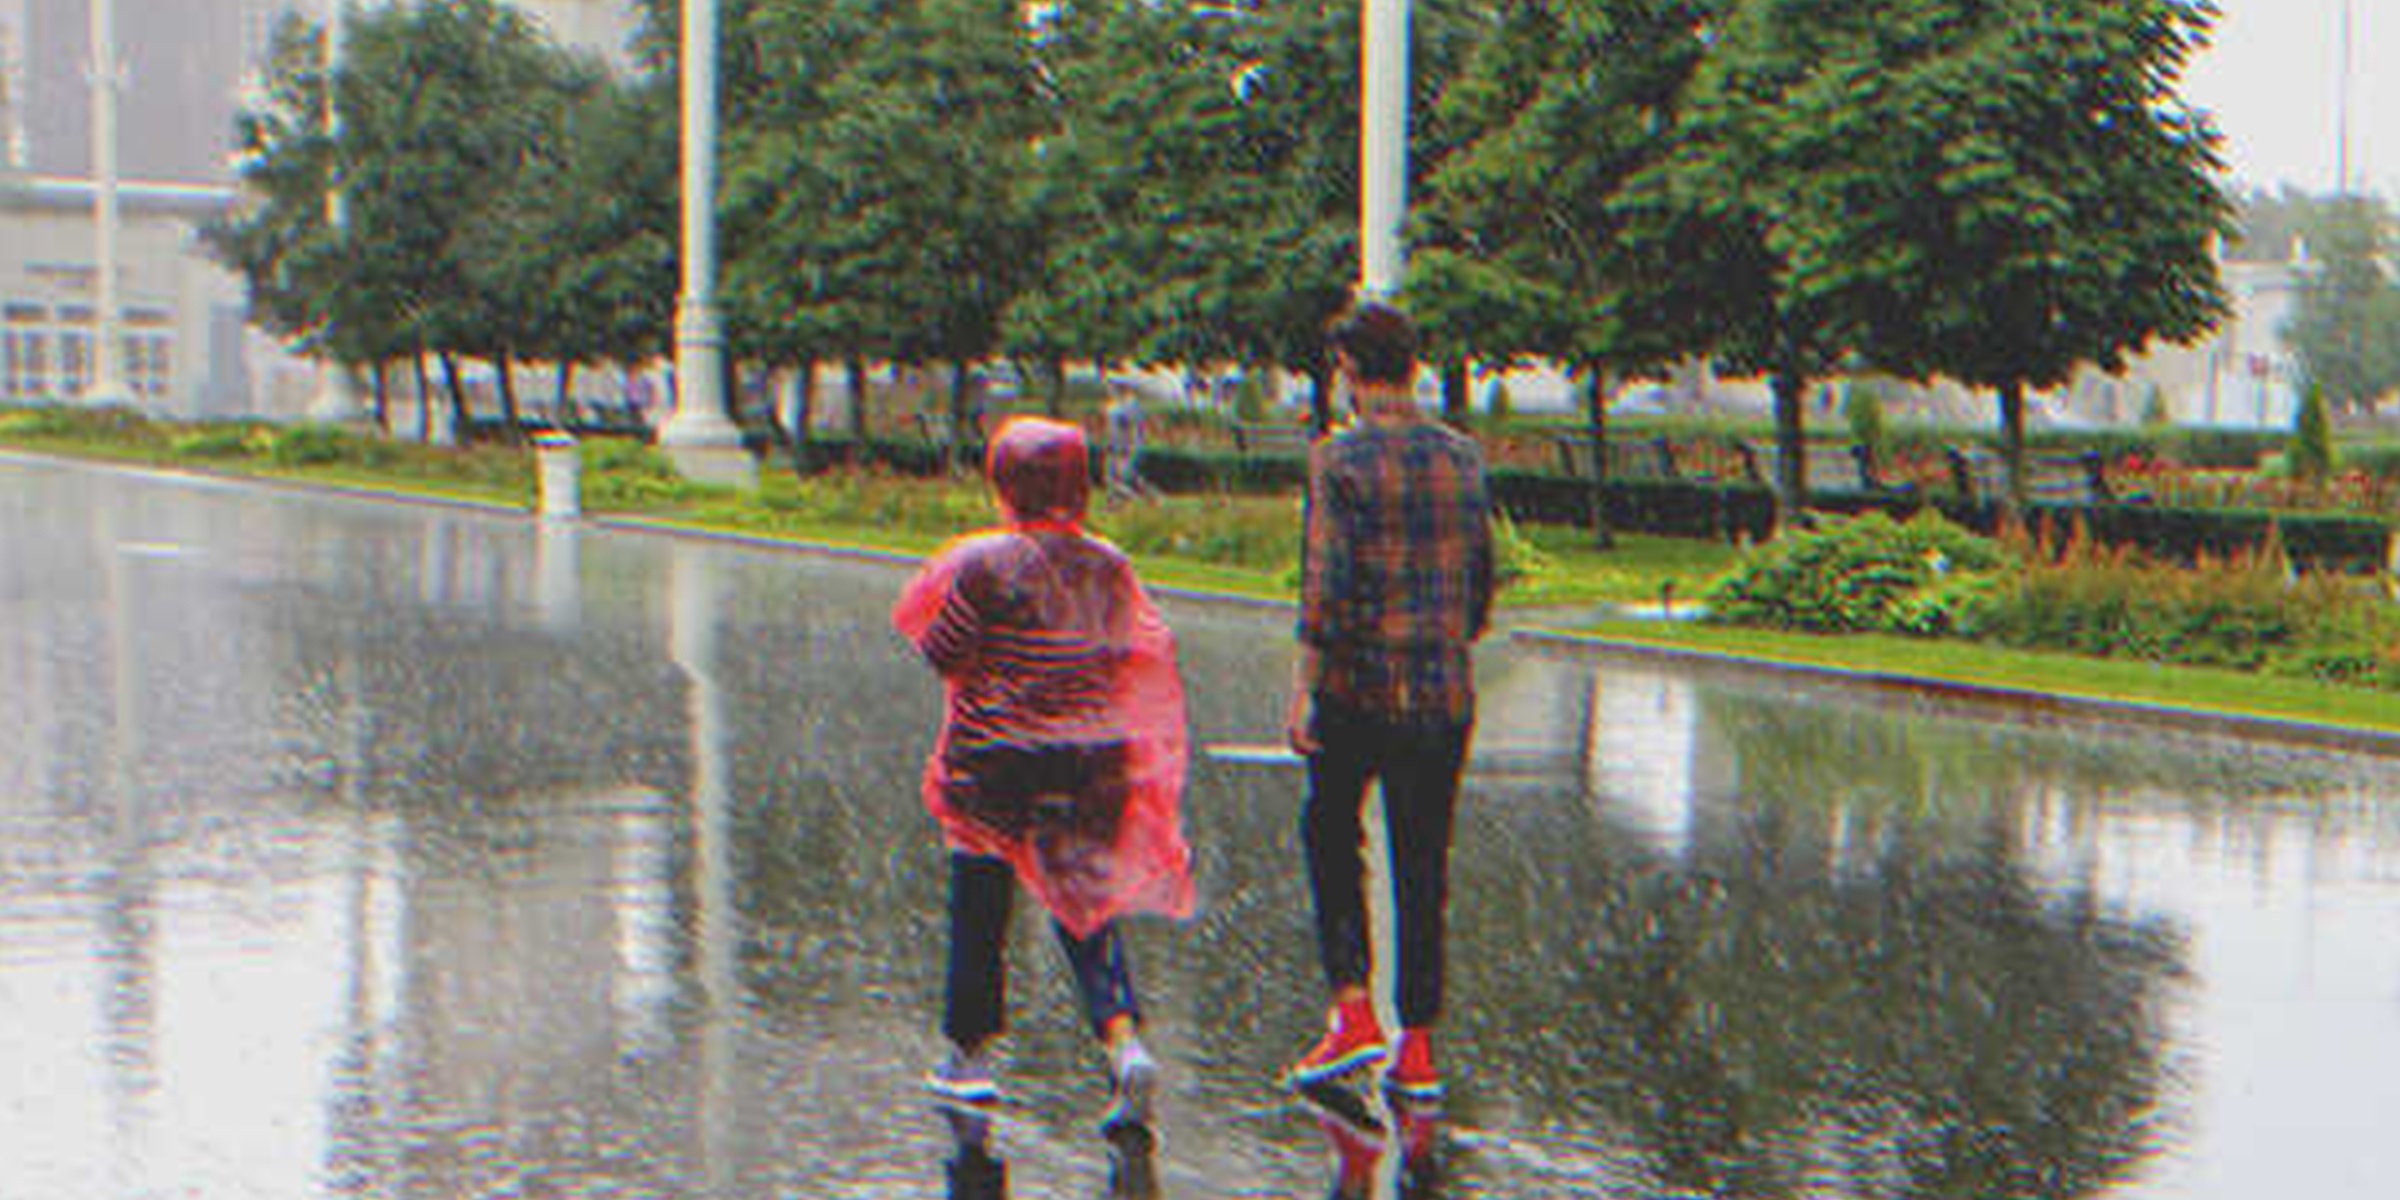 Two kids walking in the rain | Source: Shutterstock